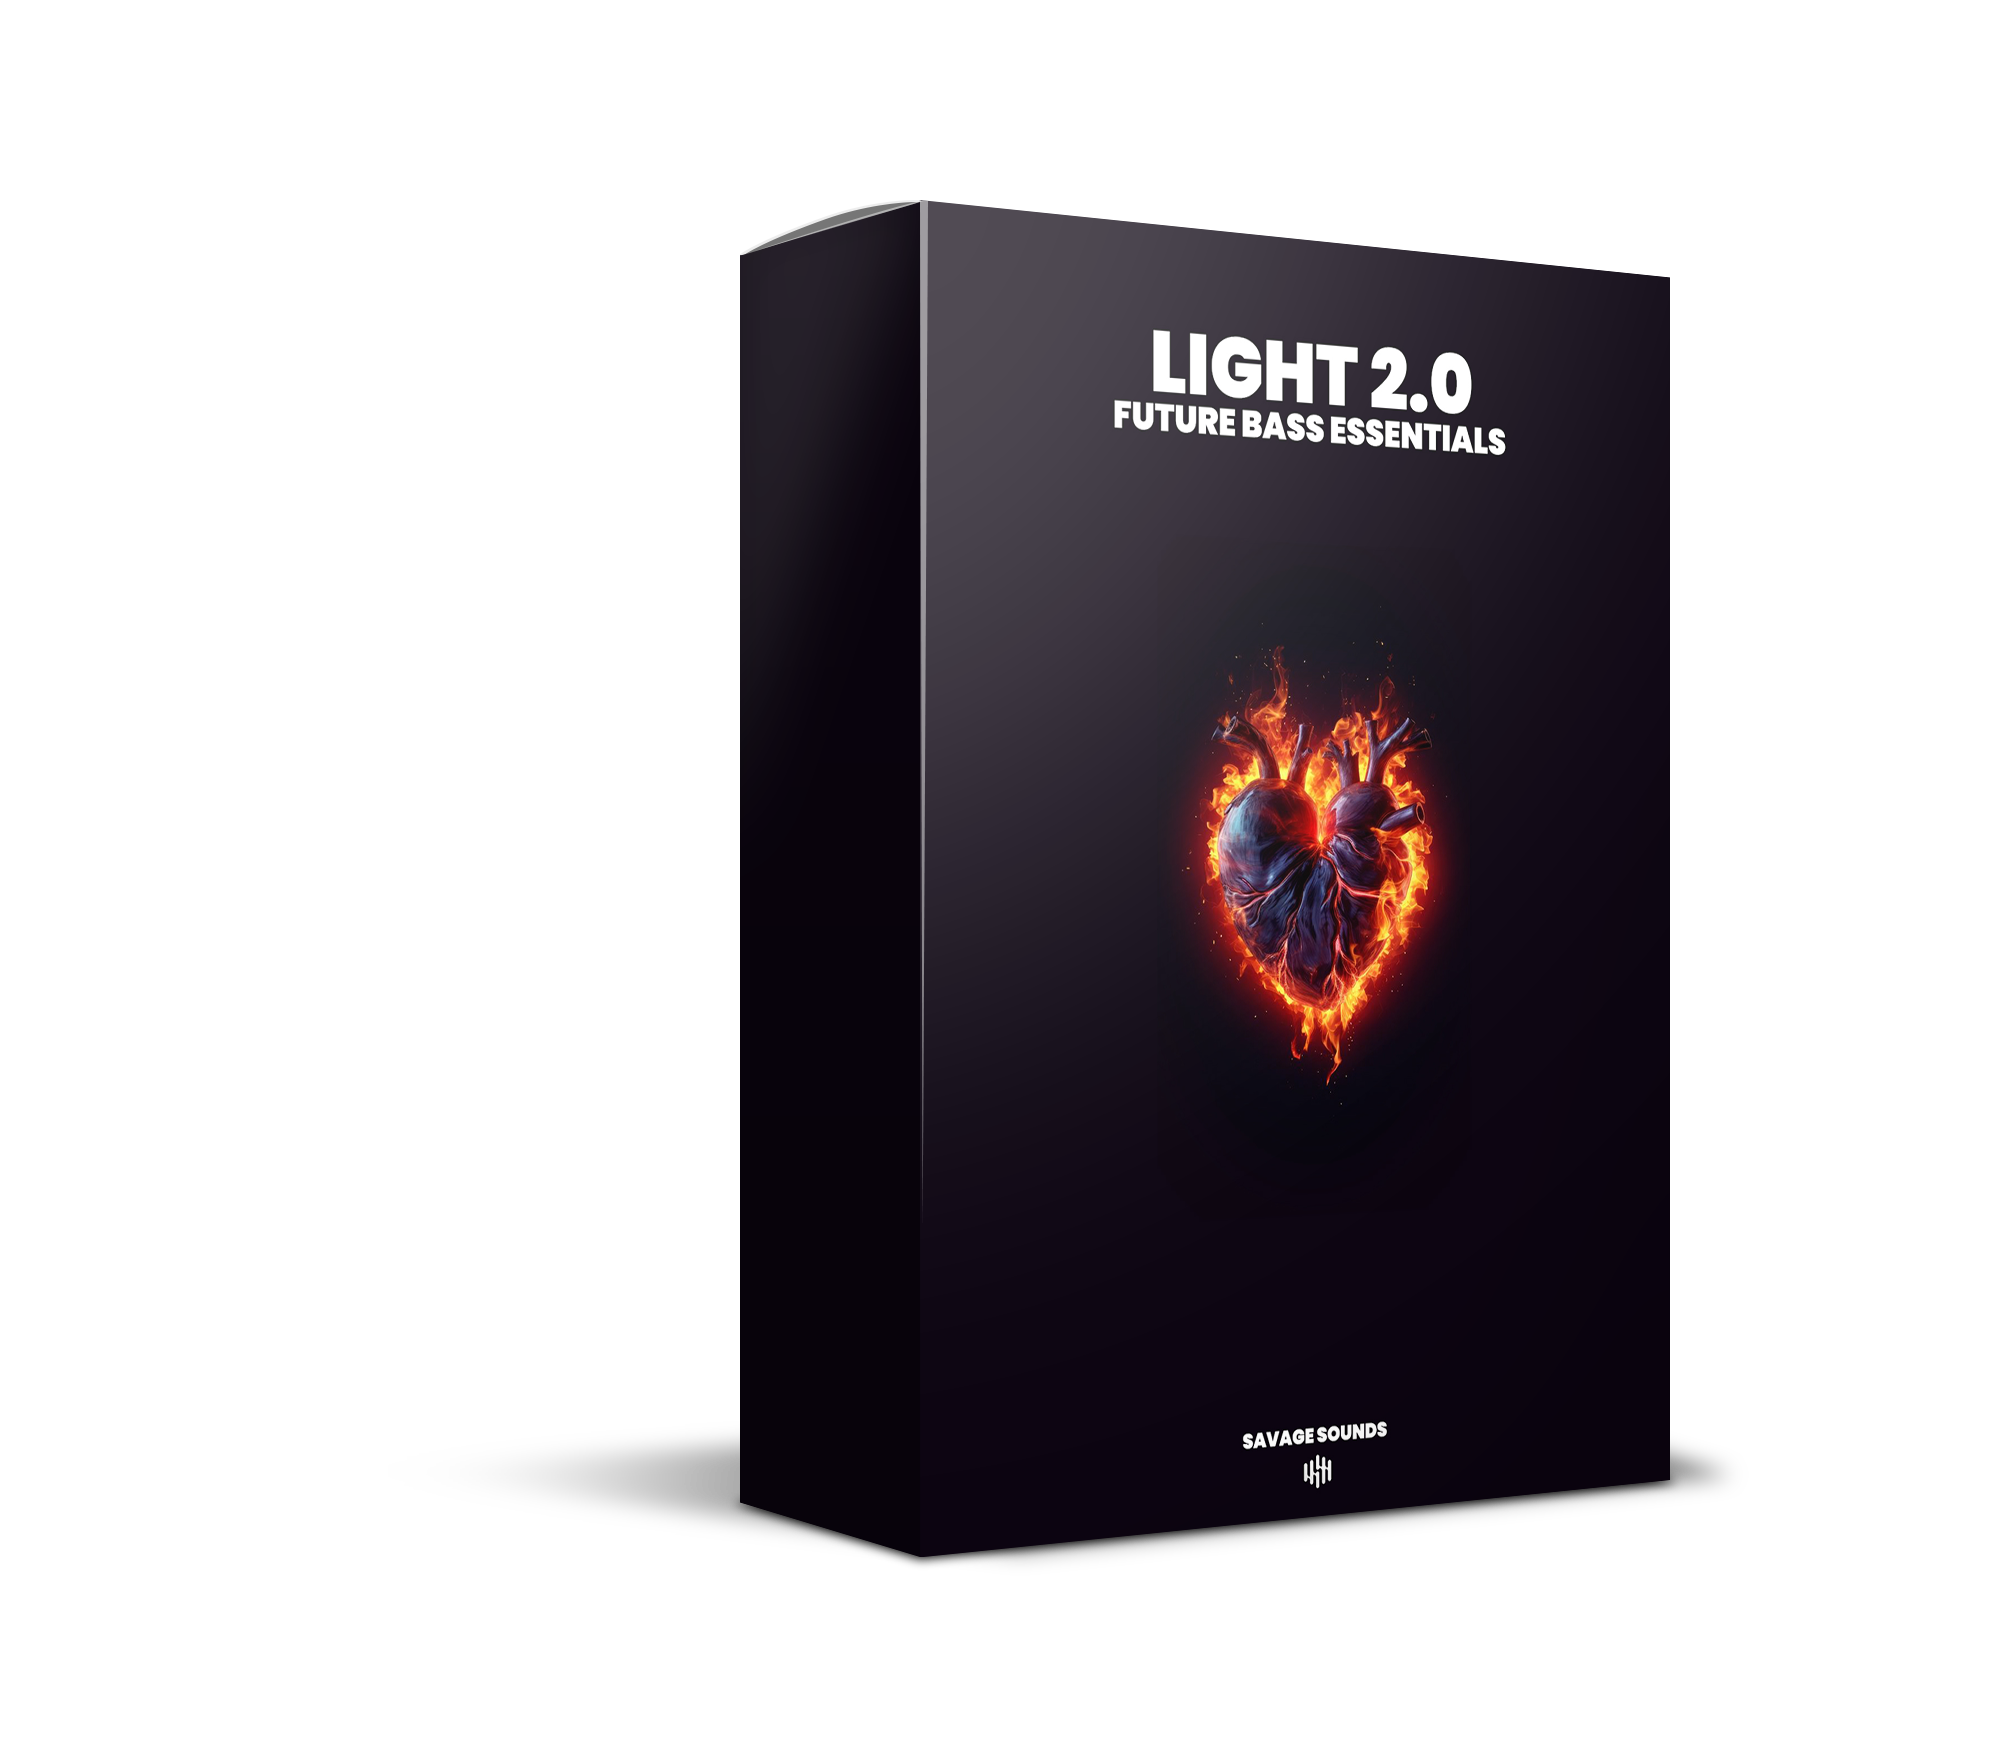 LIGHT 2.0 - Future Bass Essentials